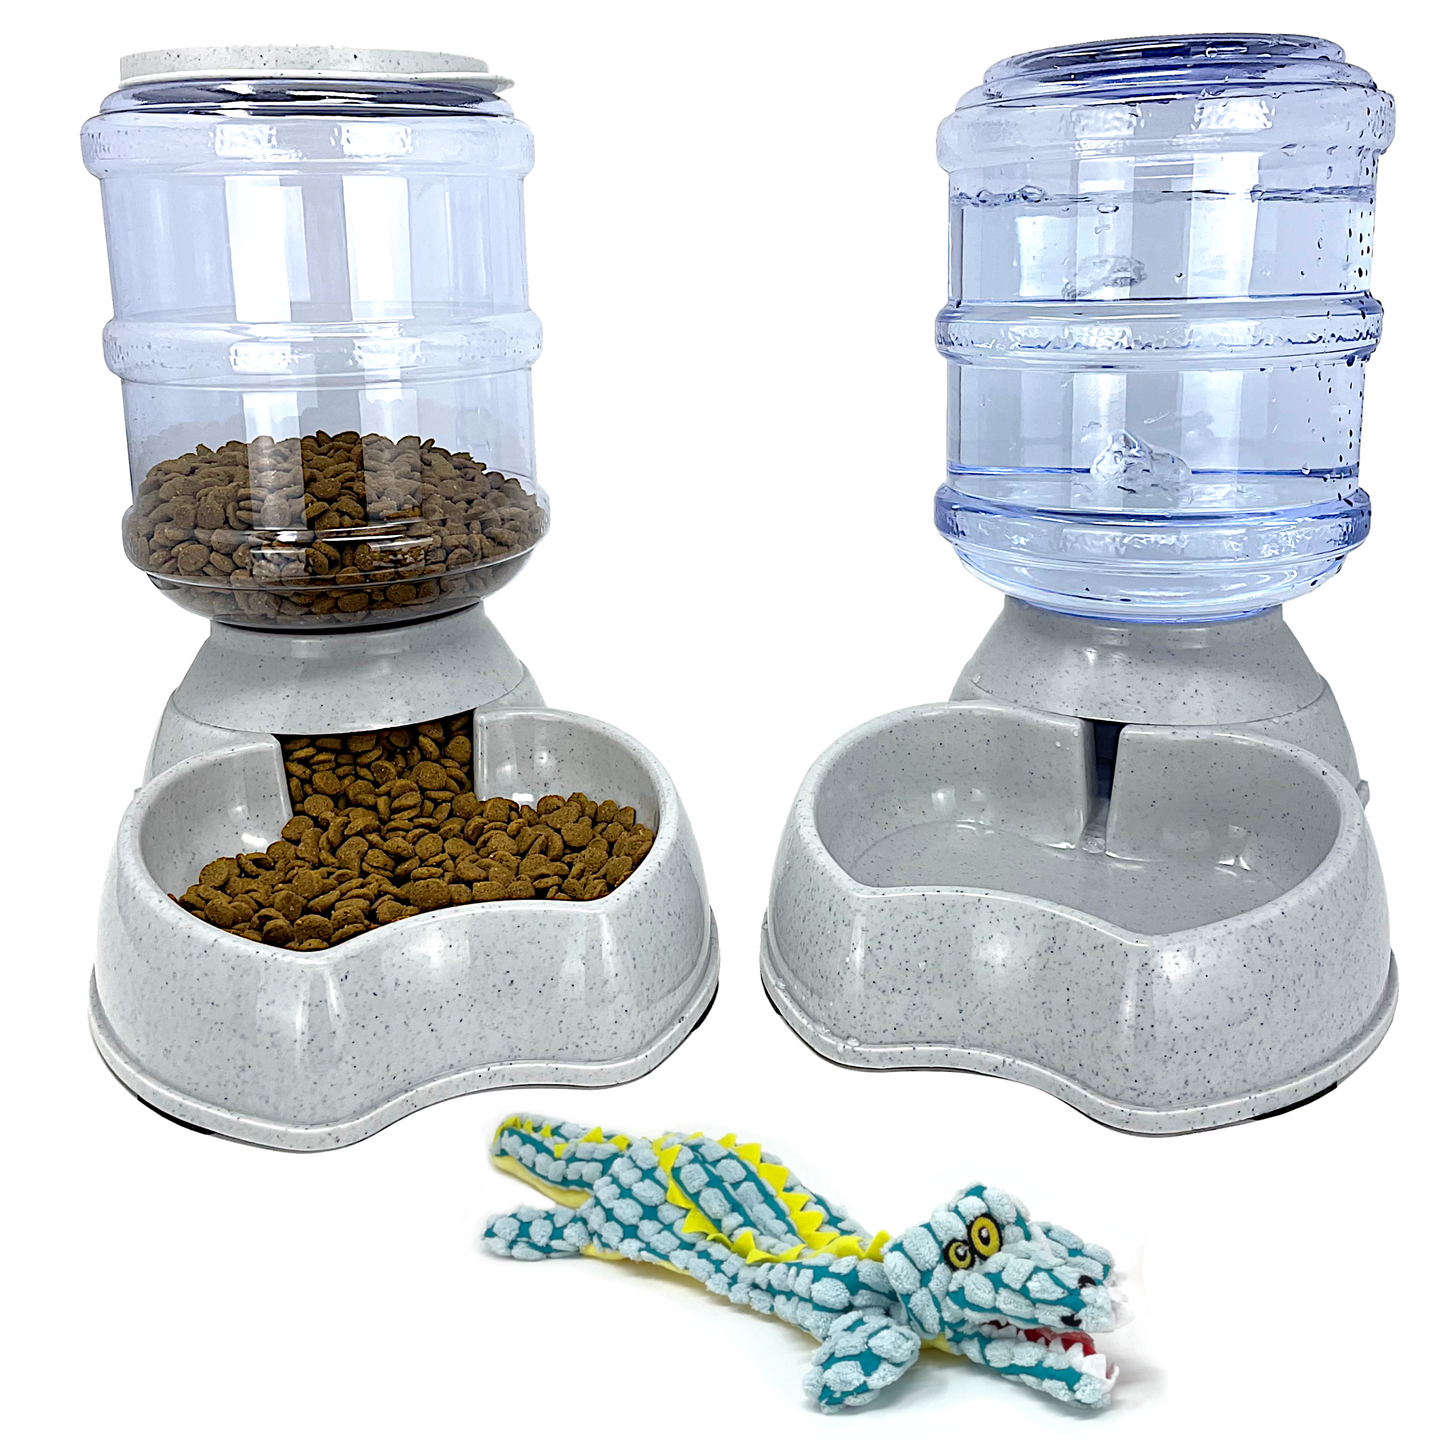 Automatic Food-Water Dispensing Bottles - Bonus Dog Toy